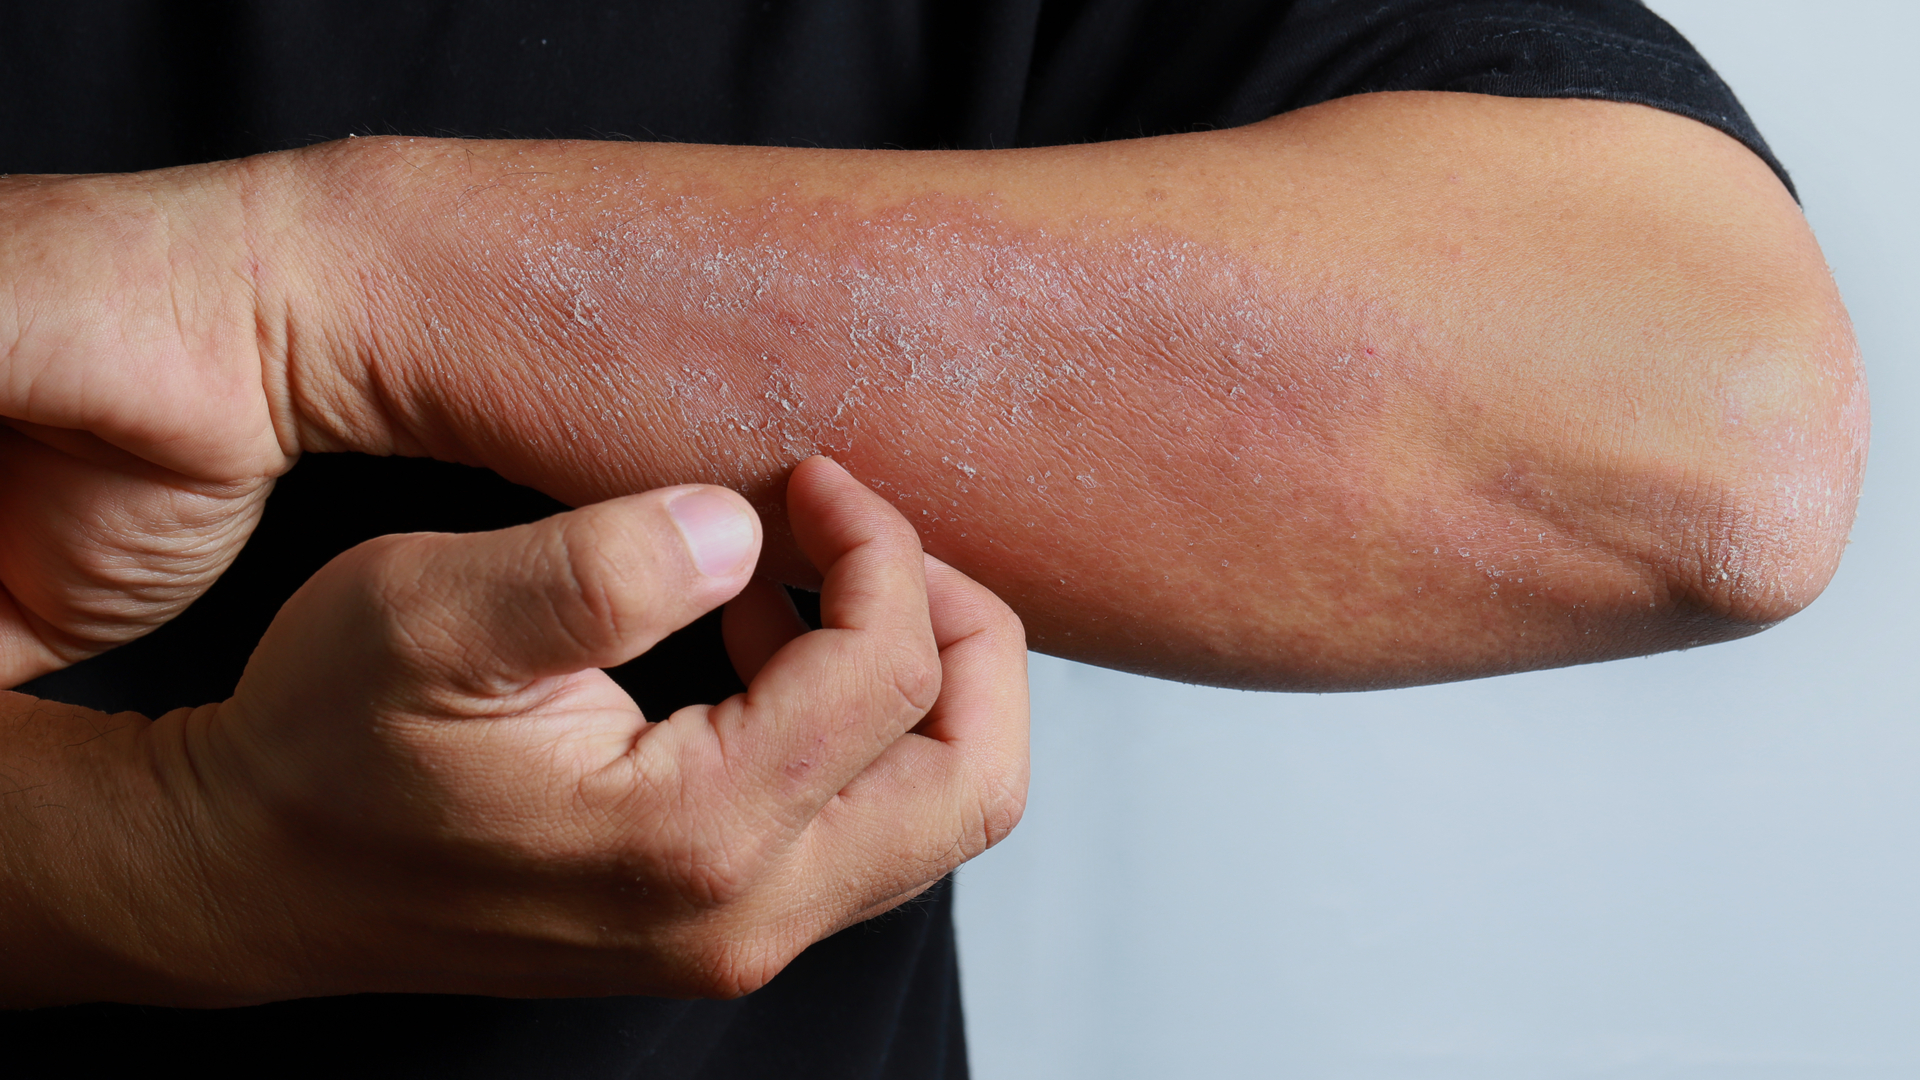 Problèmes de peau et travail : les causes des dermatoses professionnelles